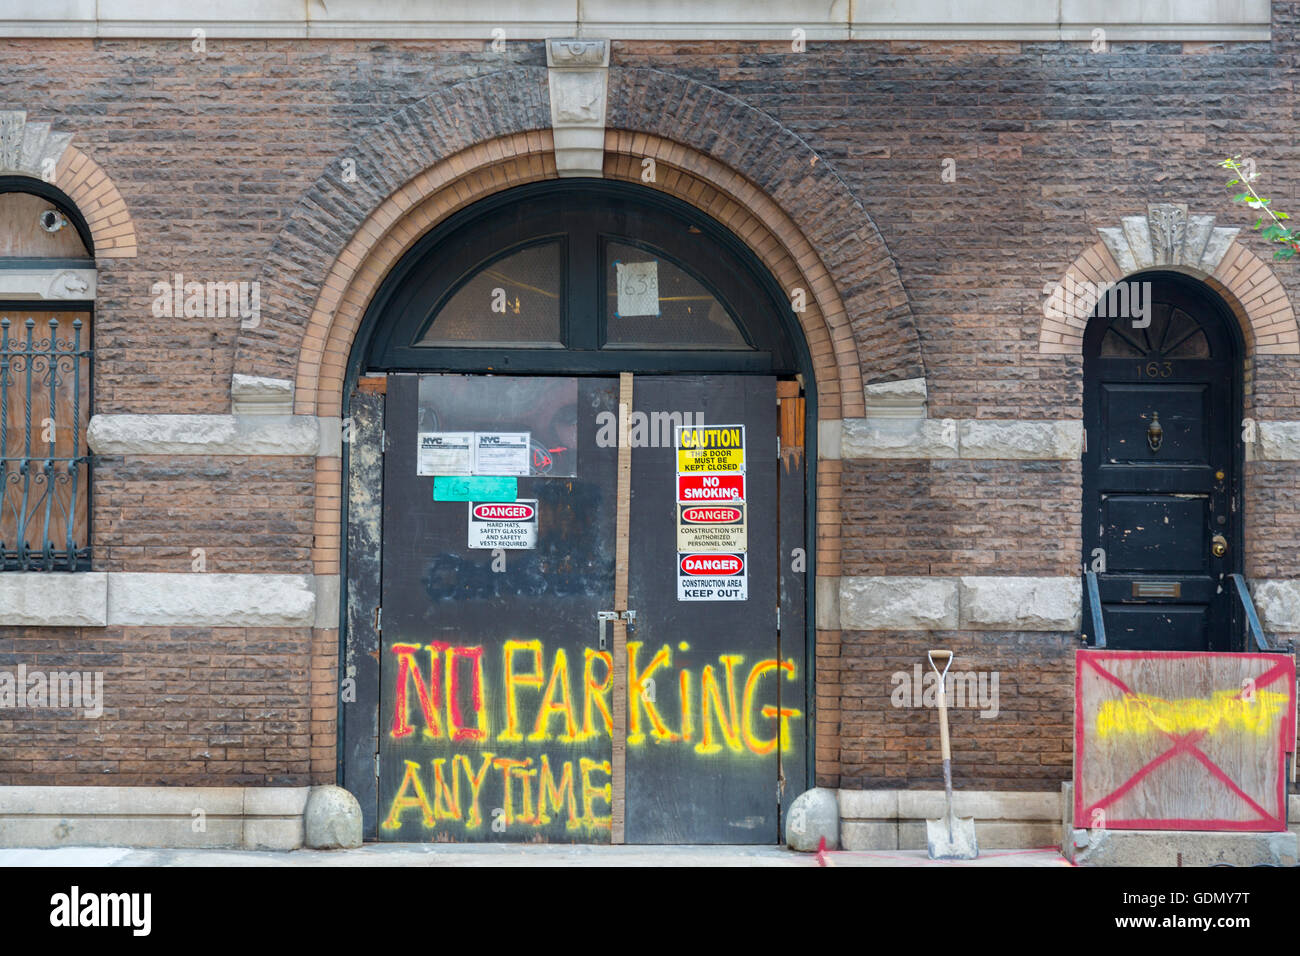 La Ciudad de Nueva York fachada de ladrillo edificio en construcción con permisos, advertencias y el aparcamiento no siempre pintado con spray en las puertas. Foto de stock